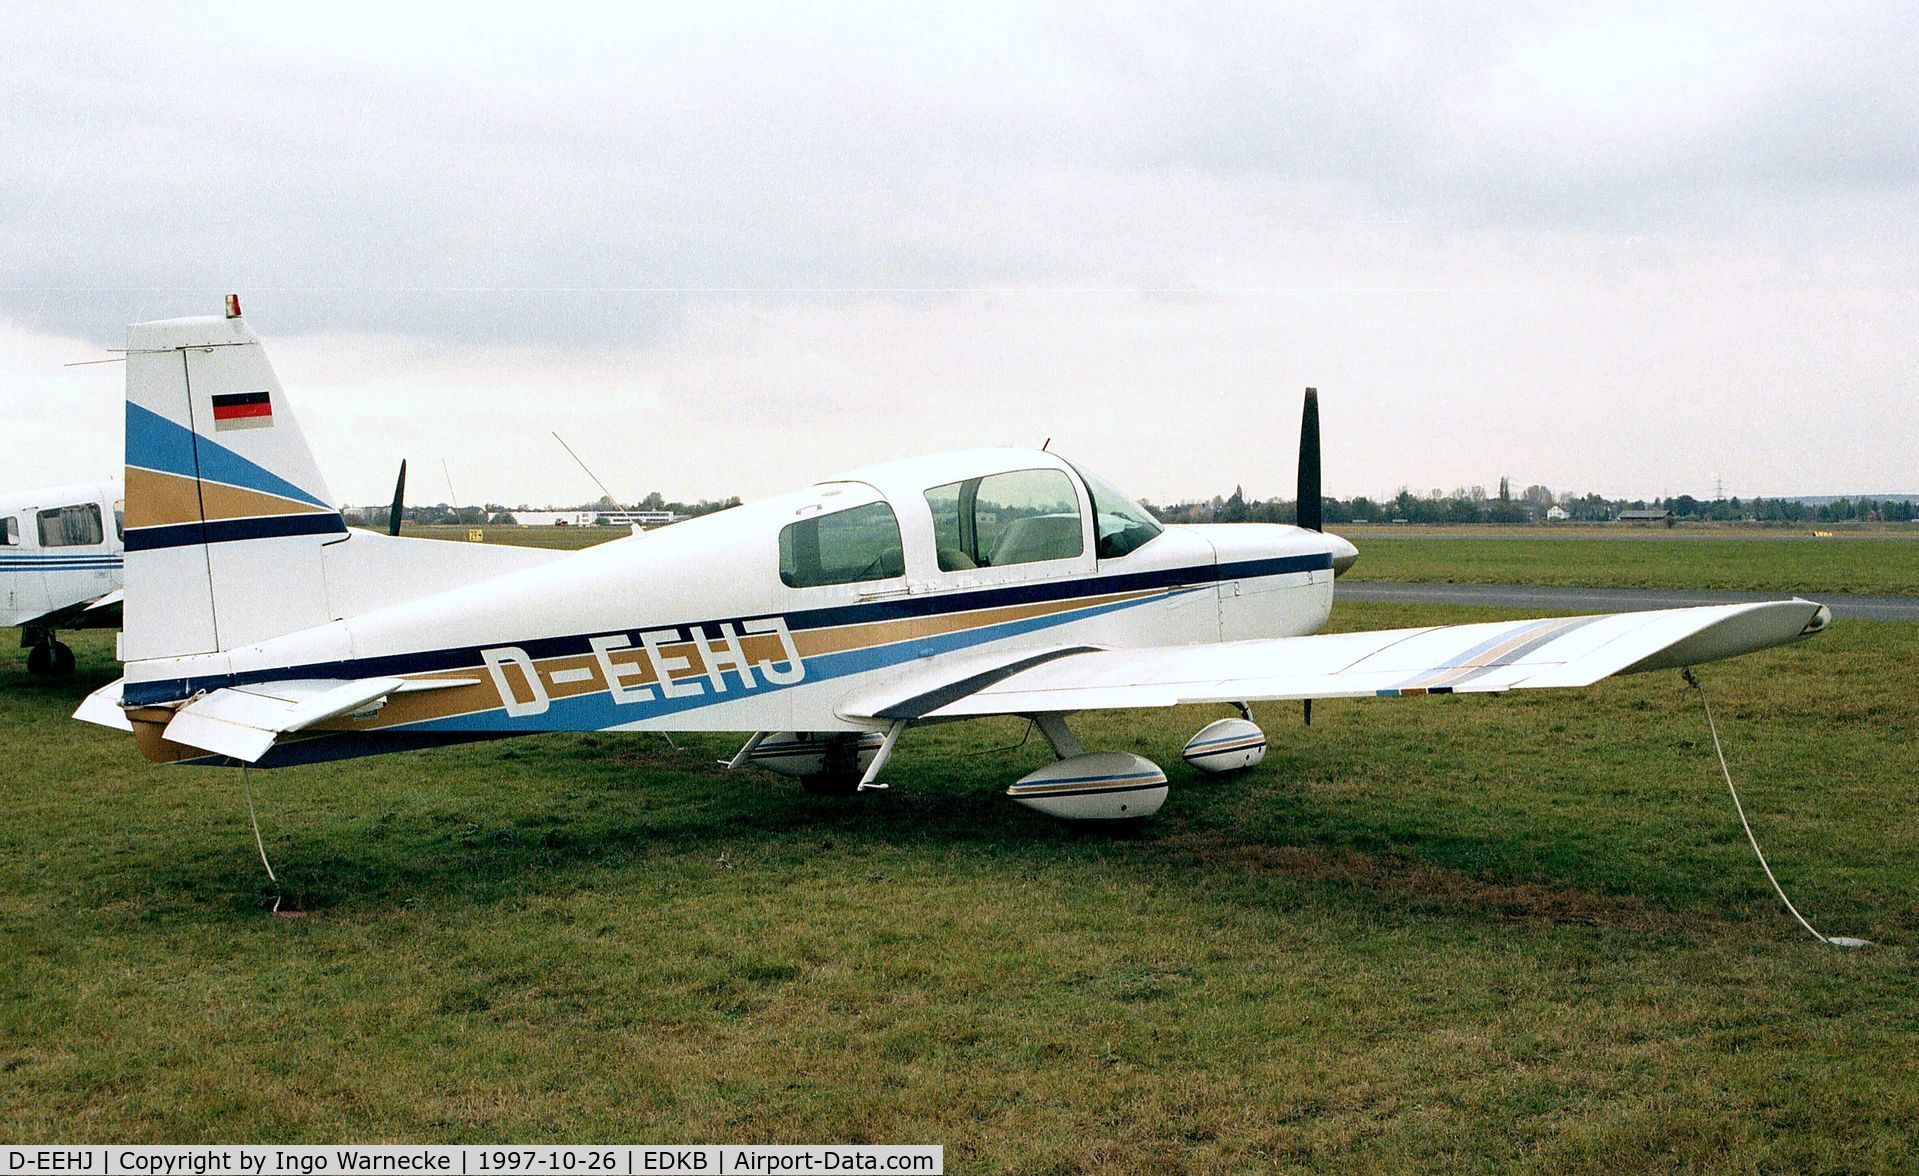 D-EEHJ, American AA-5 C/N AA5-0287, Grumman American AA-5 Traveler at Bonn-Hangelar airfield